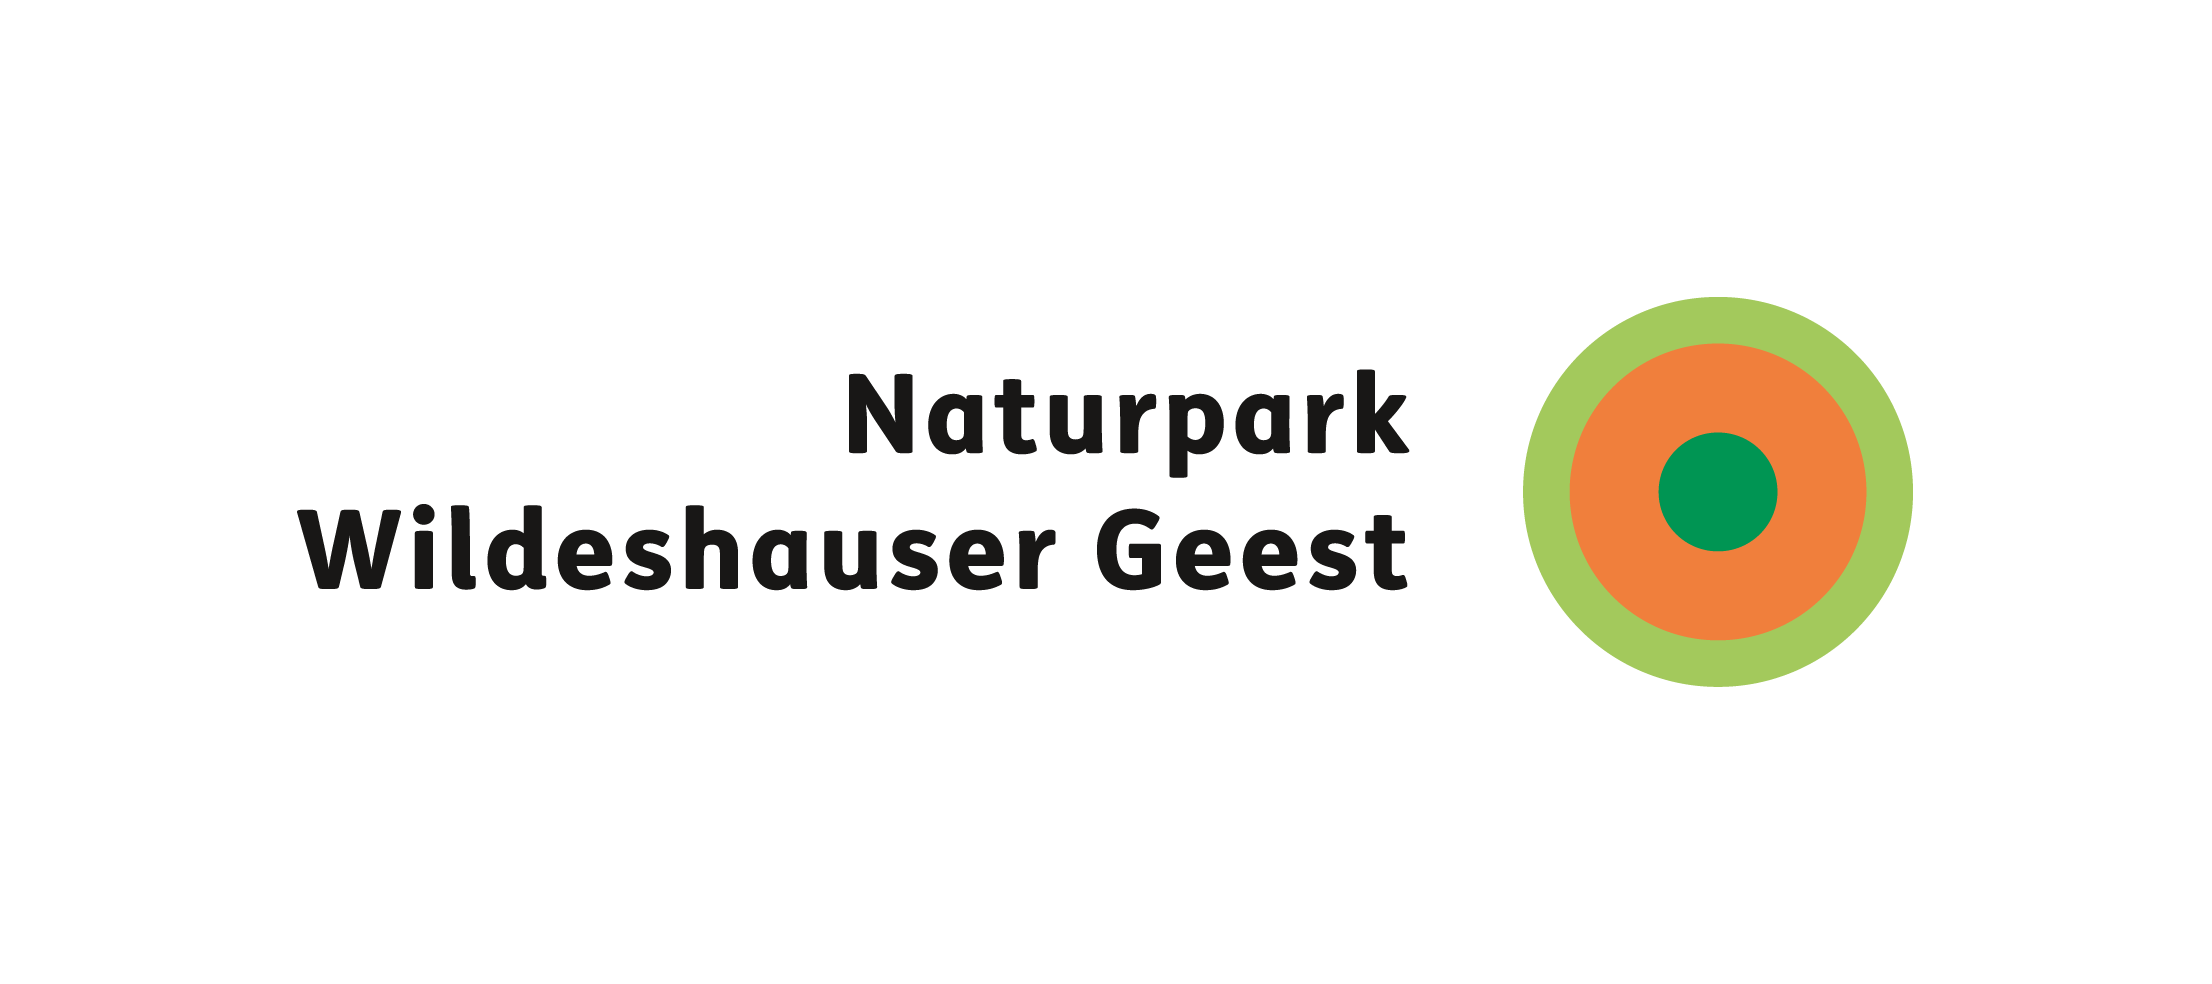 Wildeshauser Geest, Nature Park